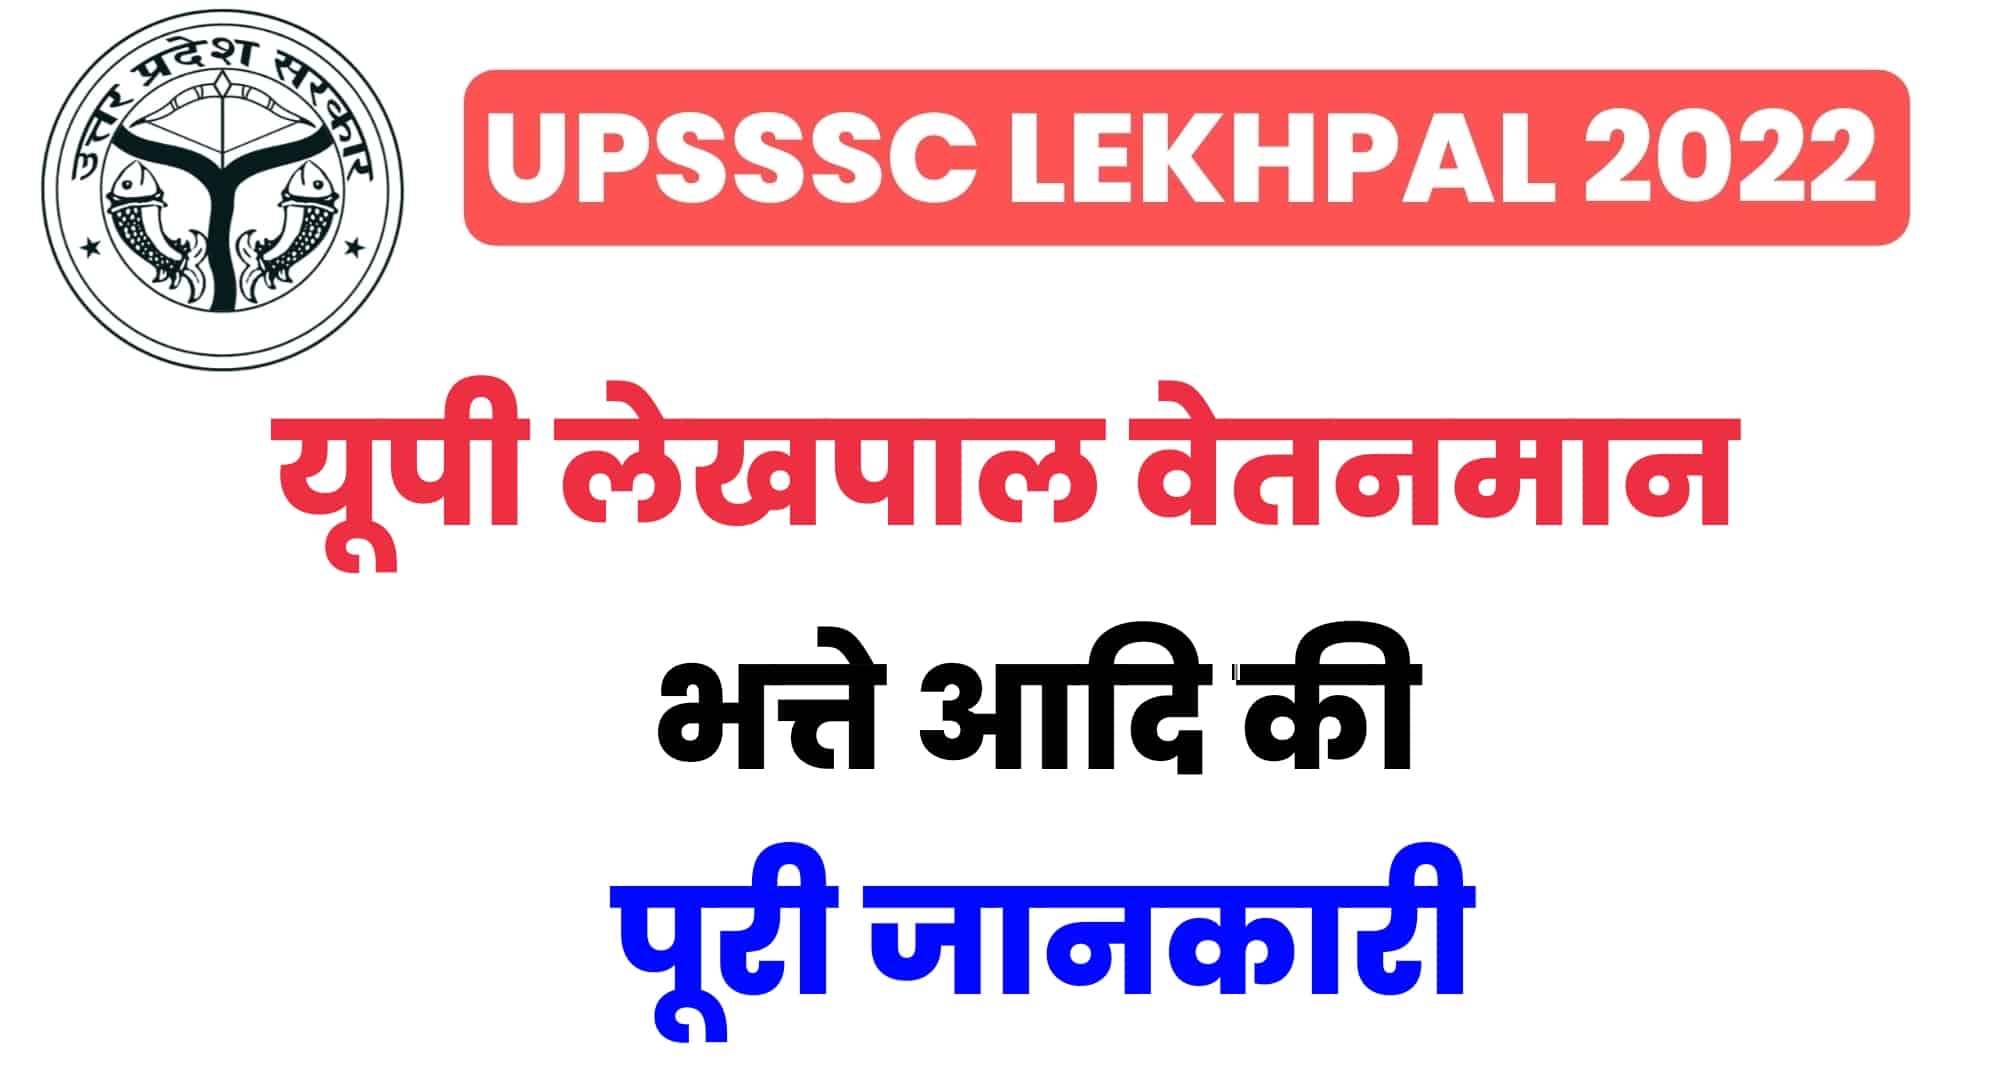 UP Lekhpal Salary 2022 : जानें कितनी है यूपी राजस्व लेखपाल की सैलरी, भत्ते और वेतनमान की पूरी जानकारी